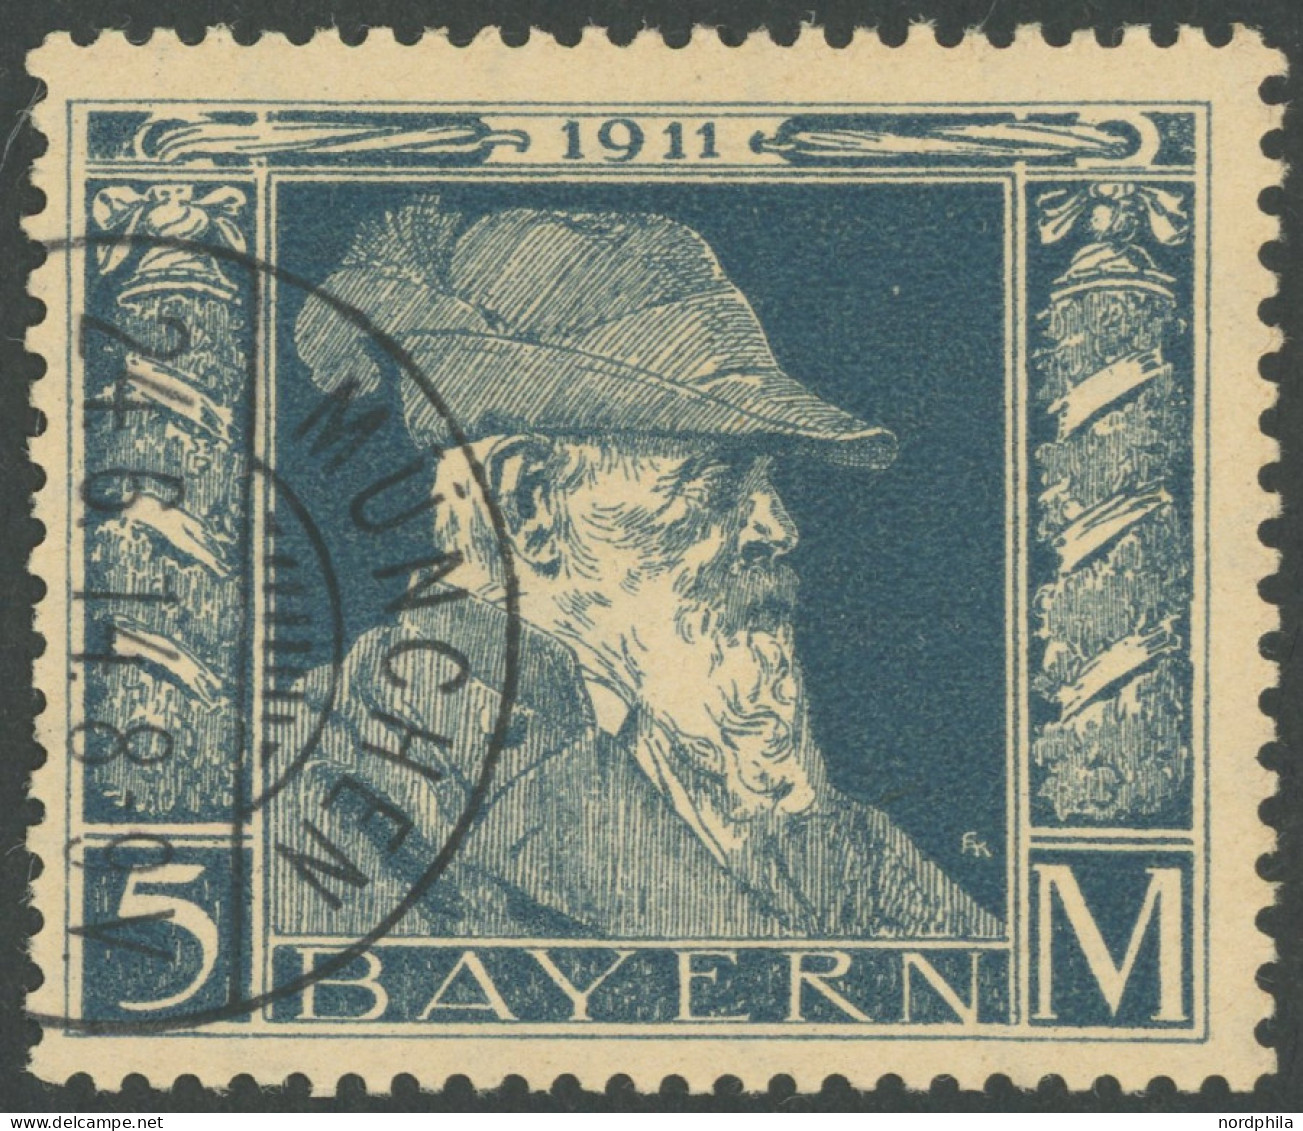 BAYERN 89II O, 1911, 5 M. Luitpold, Type II, Pracht, Mi. 220.- - Gebraucht